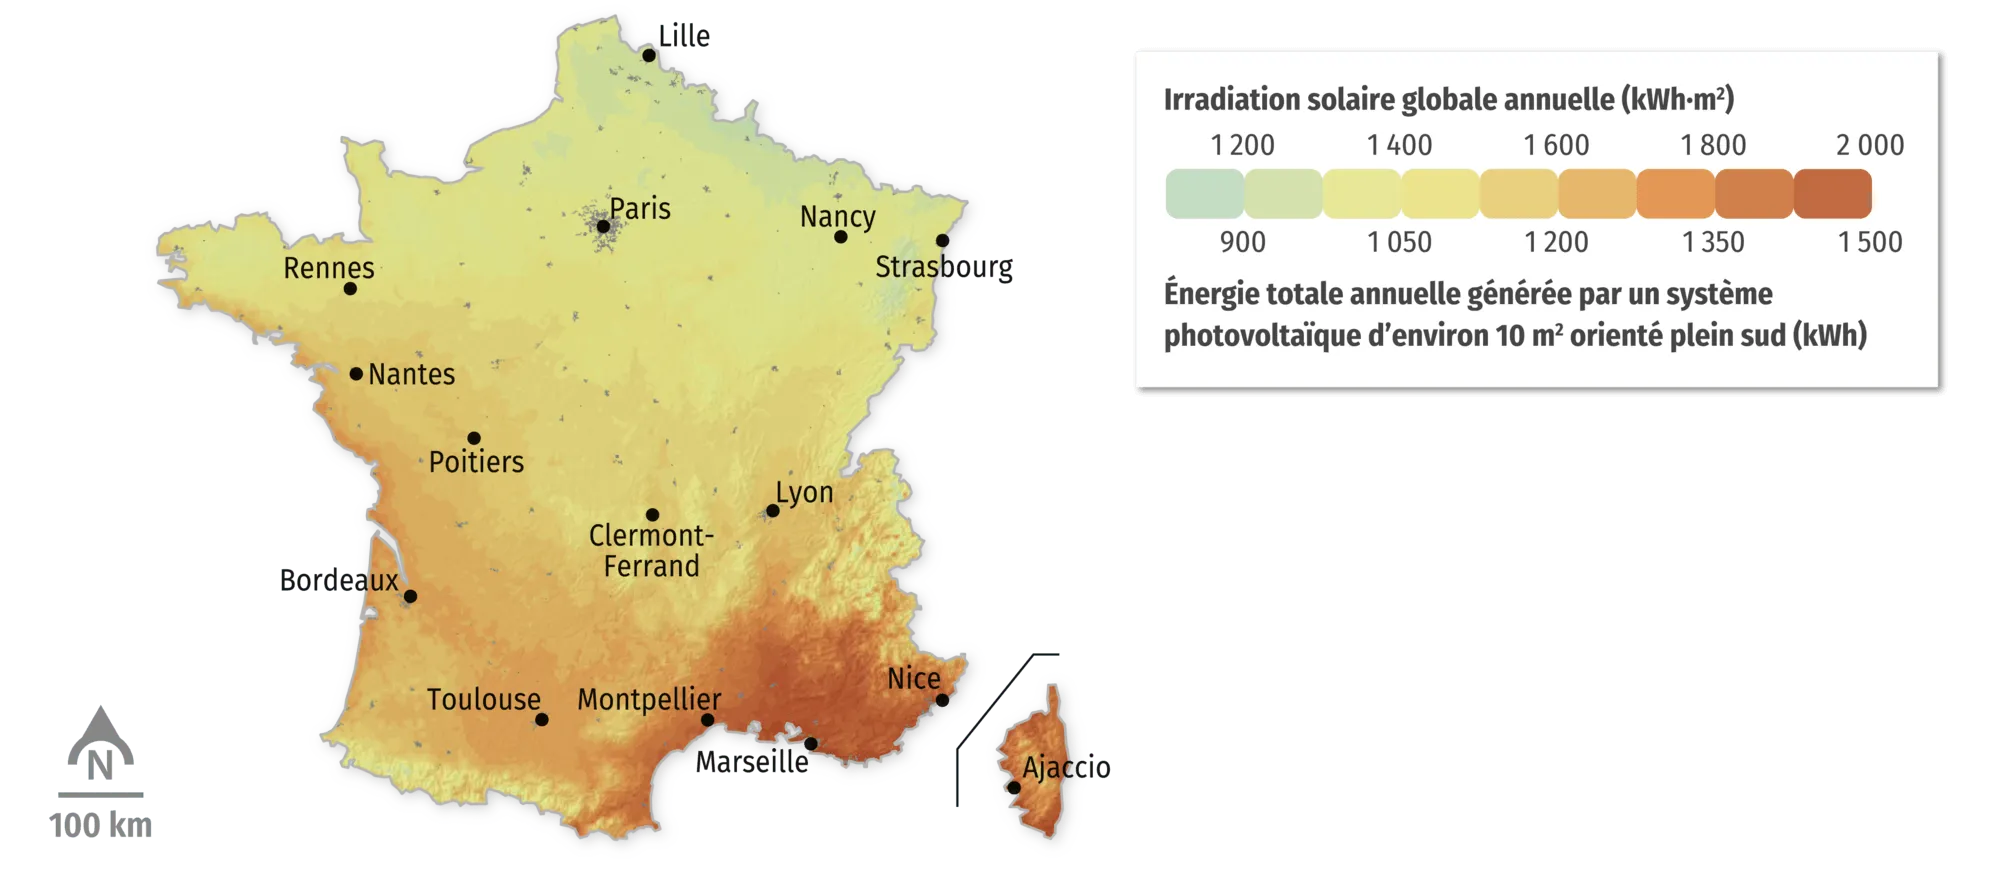 Irradiation solaire et potentiel solaire électrique en France